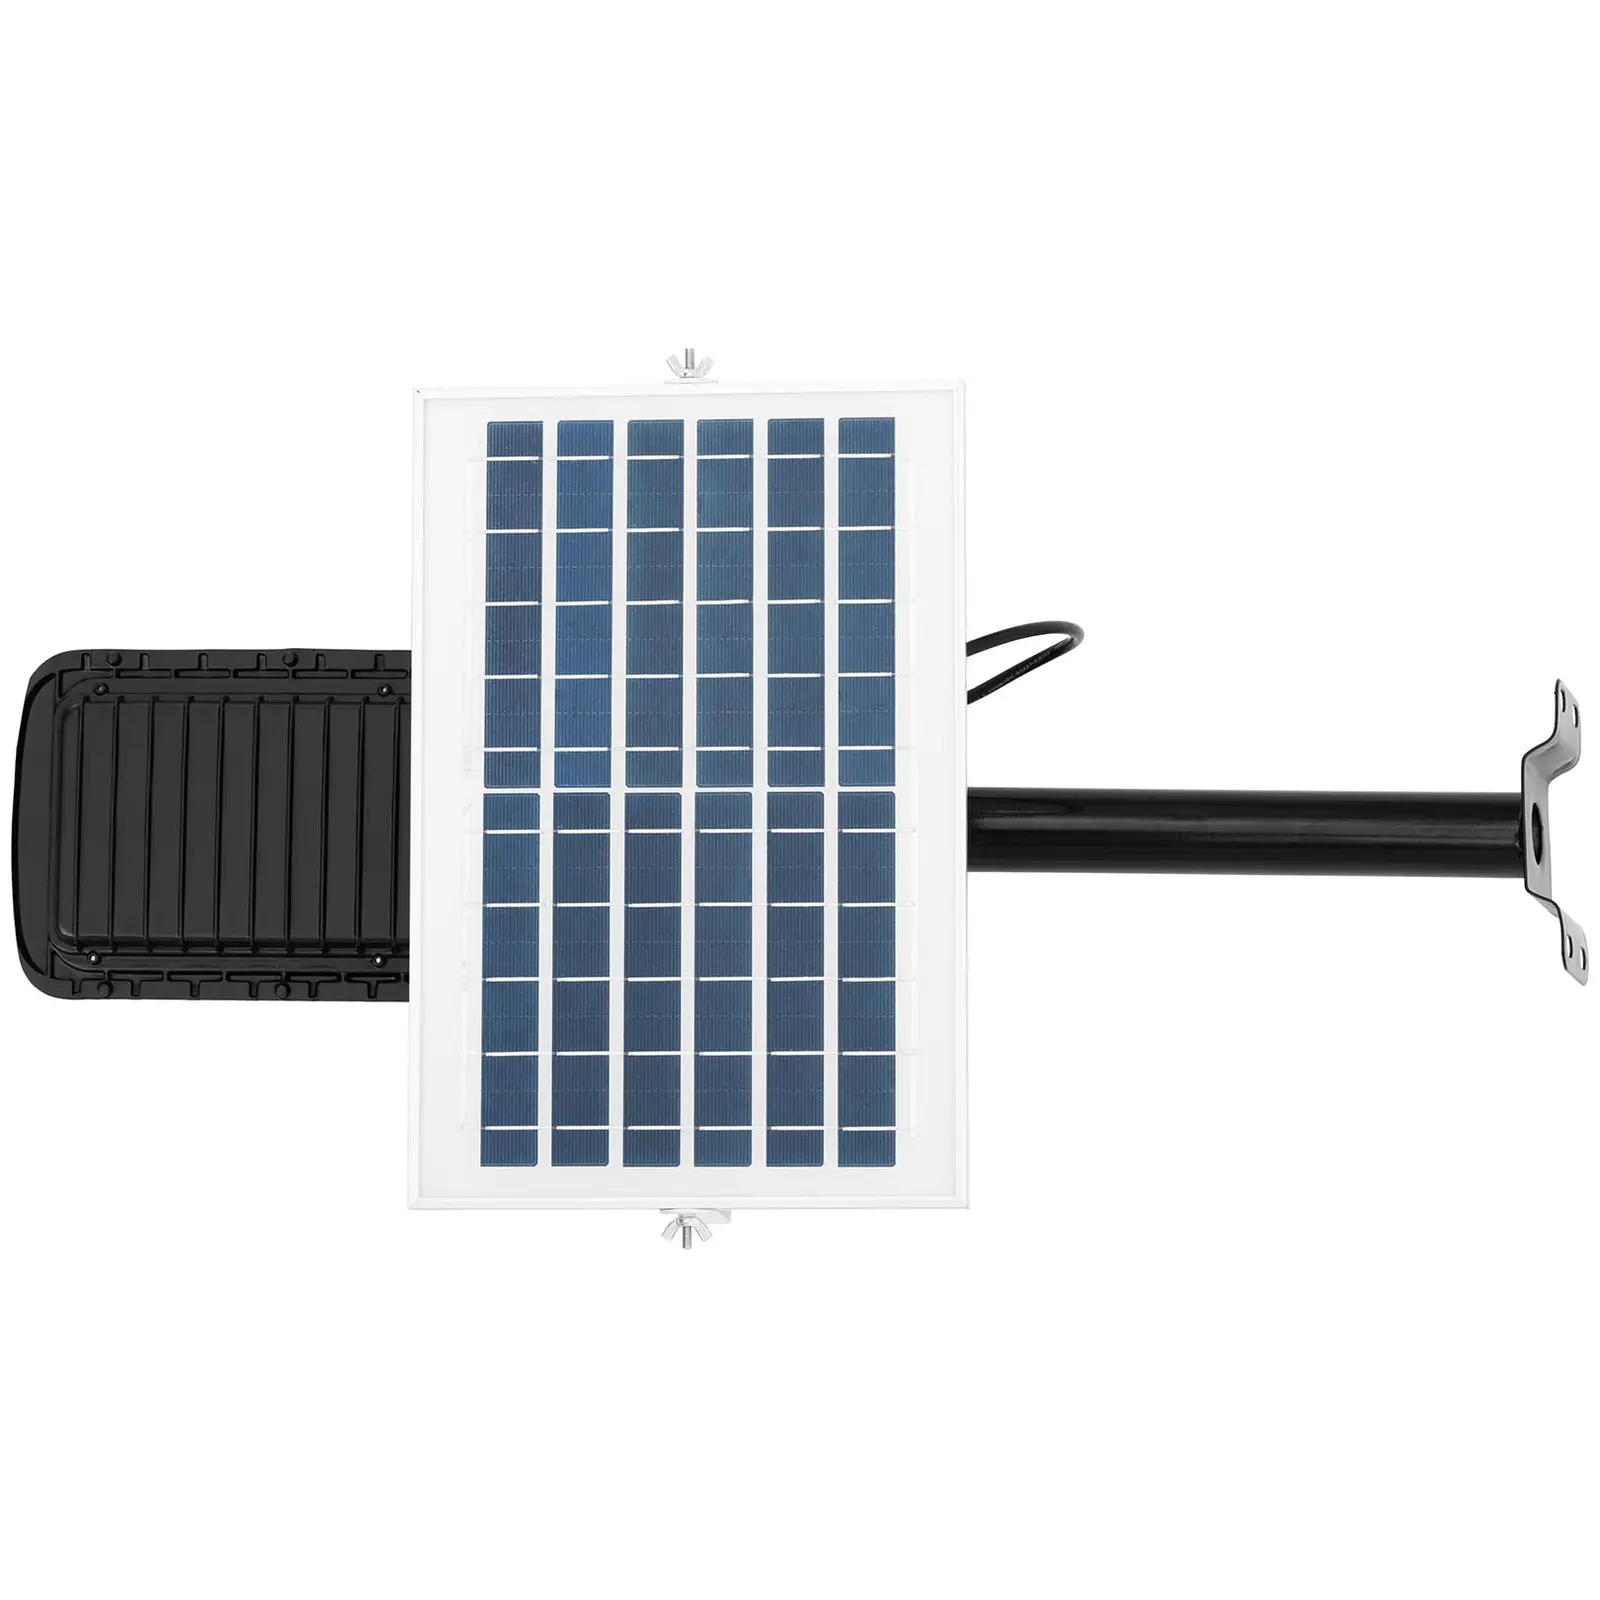 Candeeiro solar de exterior - 80 W - 6000-6500 K - 14-16 h - IP65